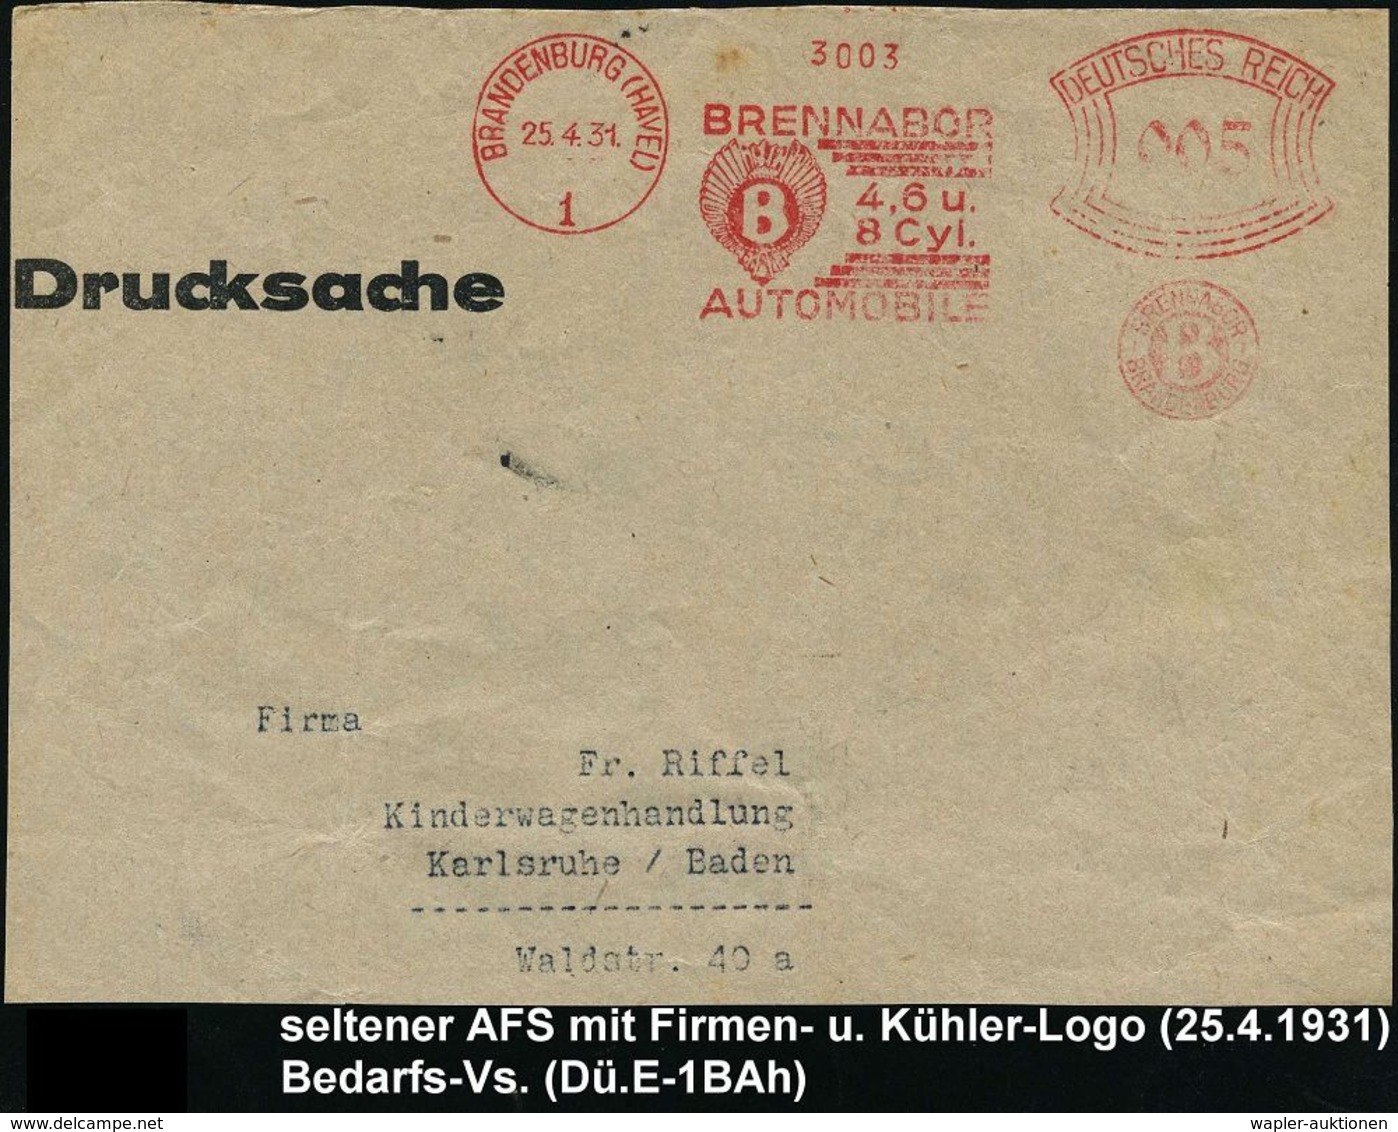 AUTOMOBIL-HERSTELLER DEUTSCHLAND : BRANDENBURG (HAVEL)/ 1/ BRENNABOR/ 4,6 U./ 8 Cyl./ AUTOMOBILE.. 1931 (25.4.) Seltener - Cars